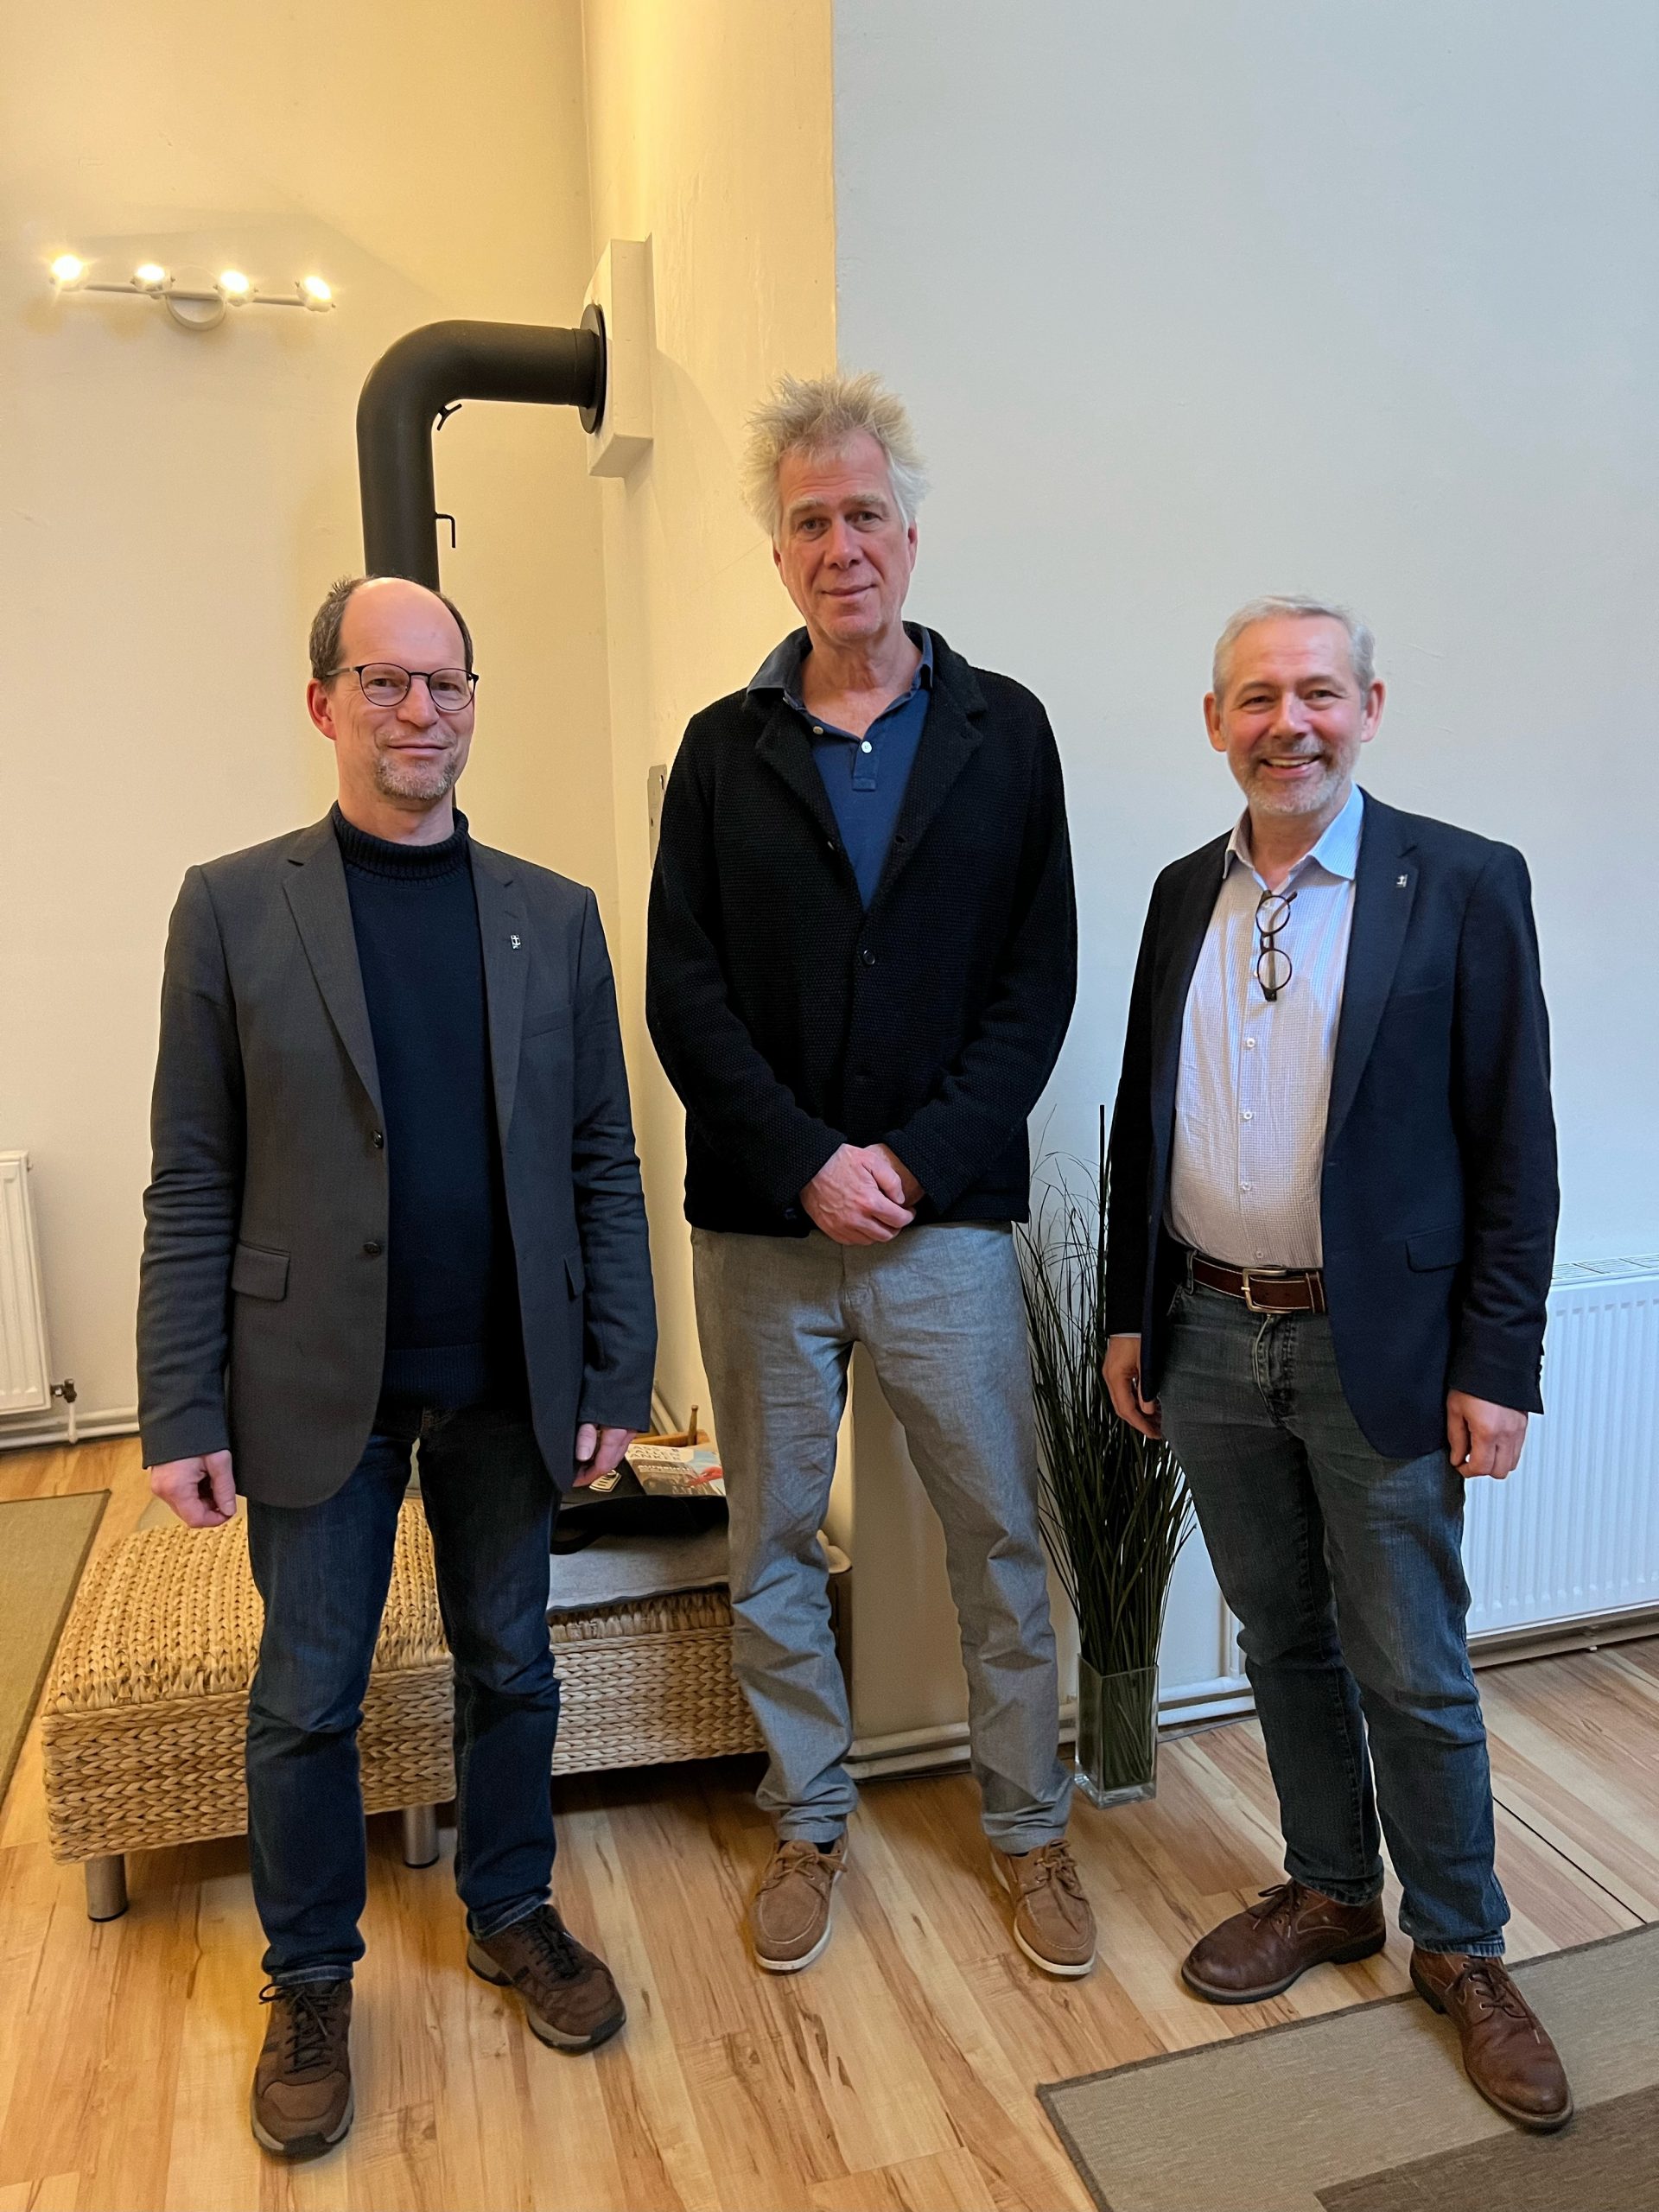 Matthias Ristau, Nikolaus Gelpke und Dirk Obermann stehen in einem Raum mit Holzfußboden vor einer weißen Wand